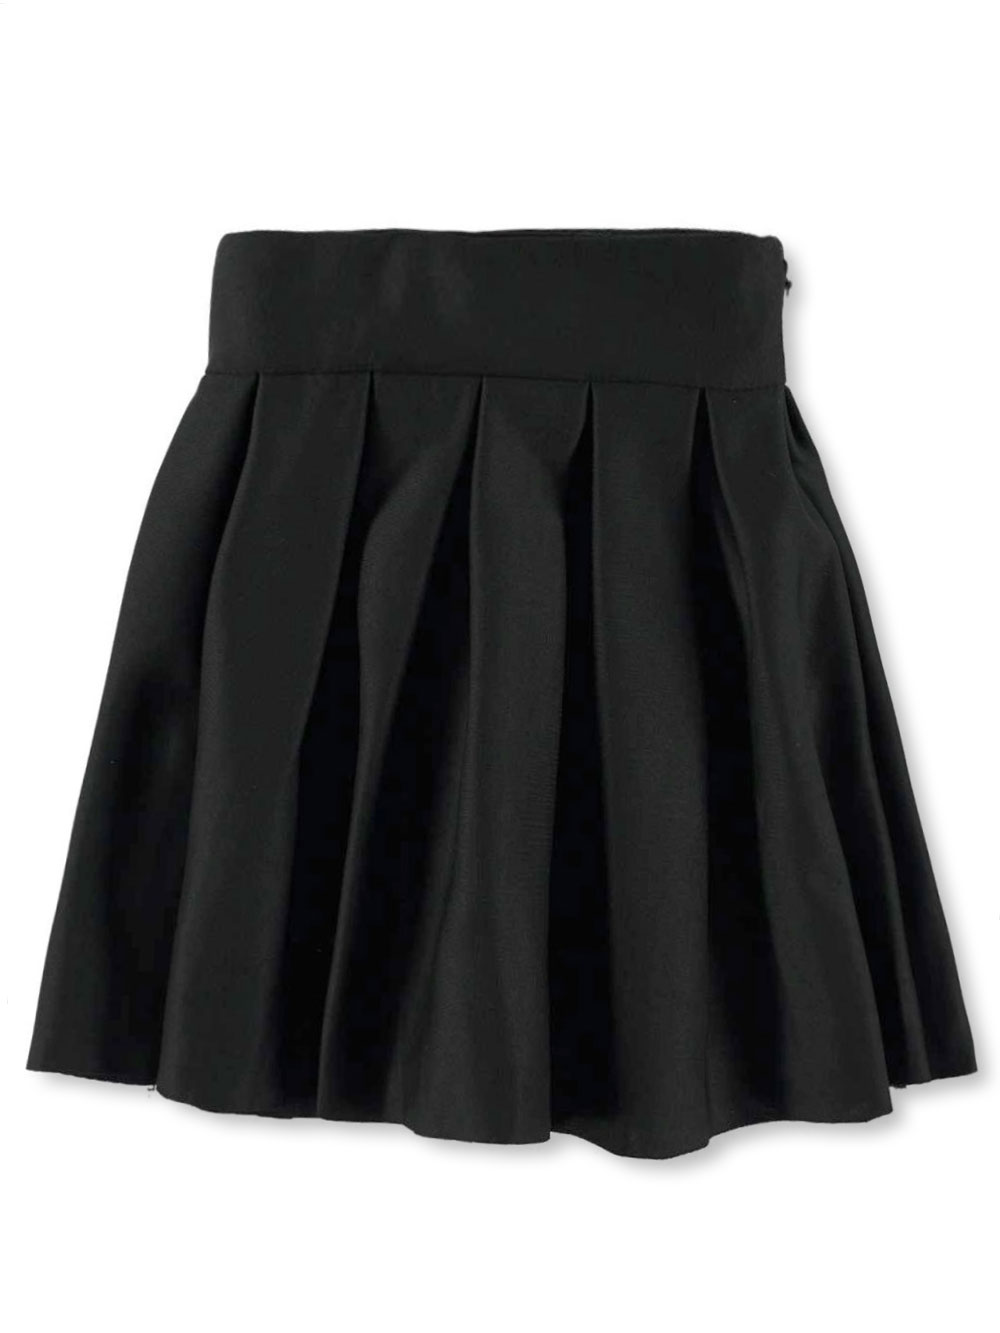 Girls Fuchsia Skirts